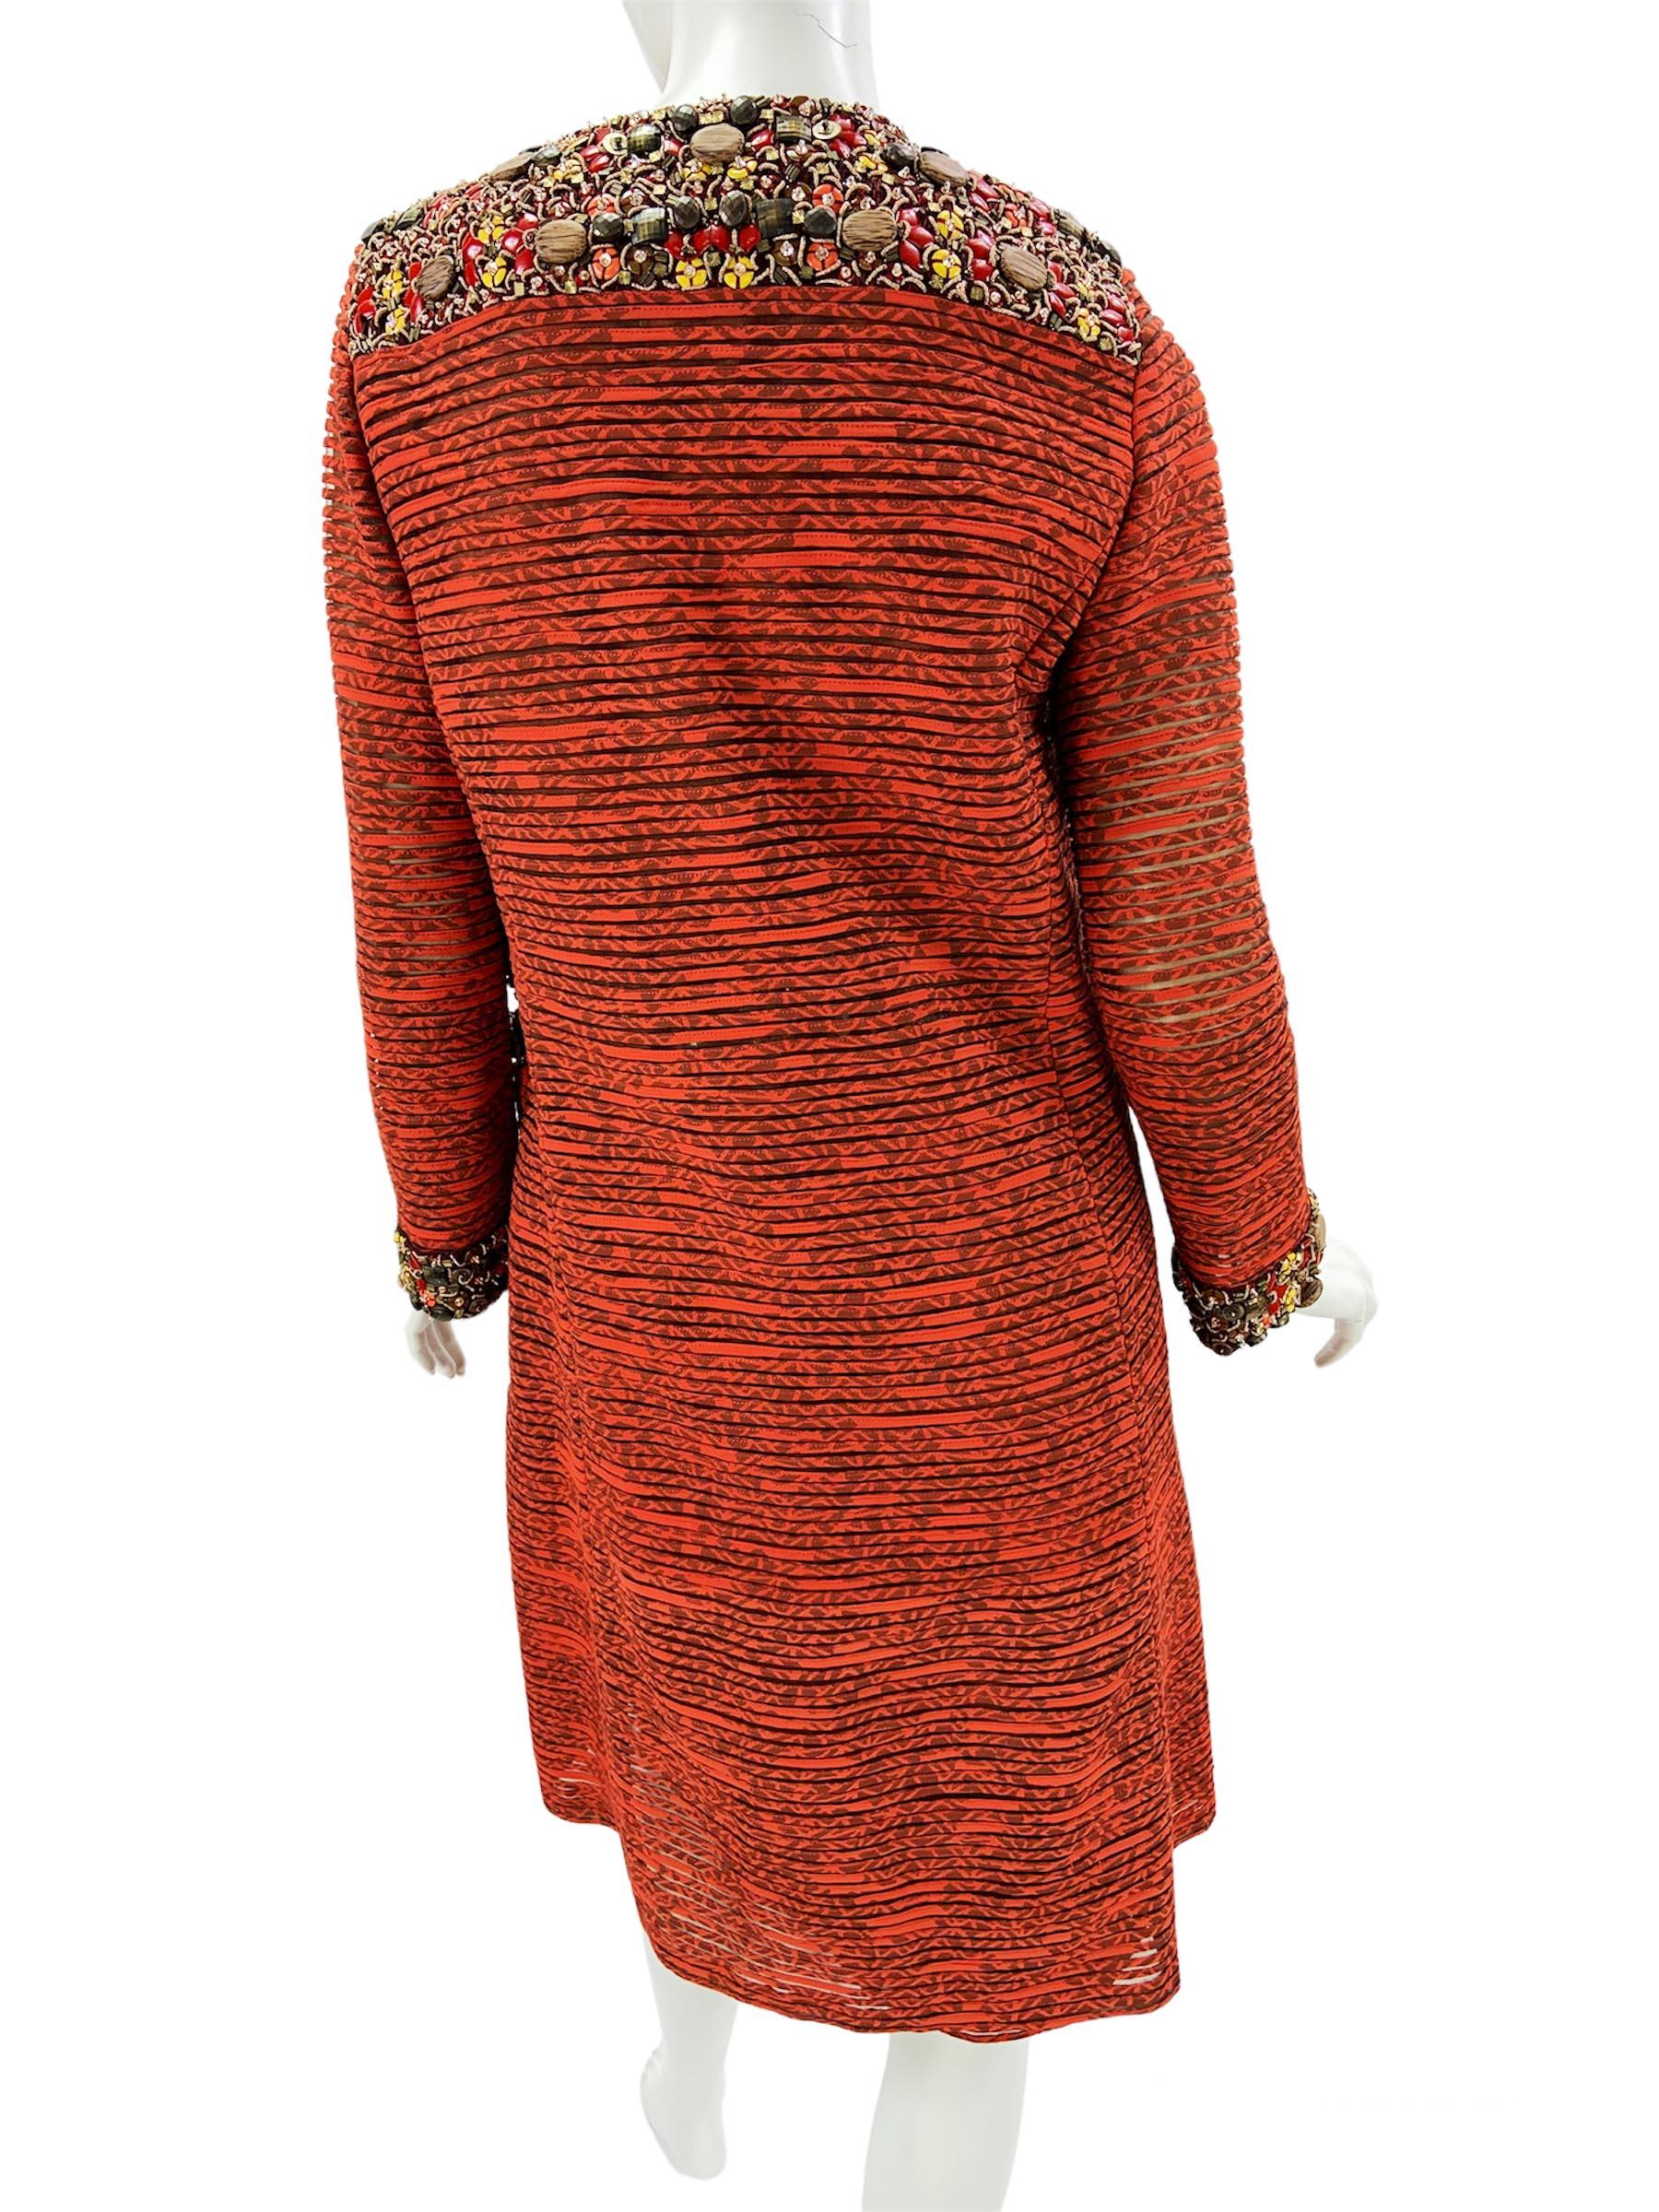 Oscar de la Renta 2009 Collection Silk Brick Red Embellished Coat + Dress US 6 4 For Sale 2